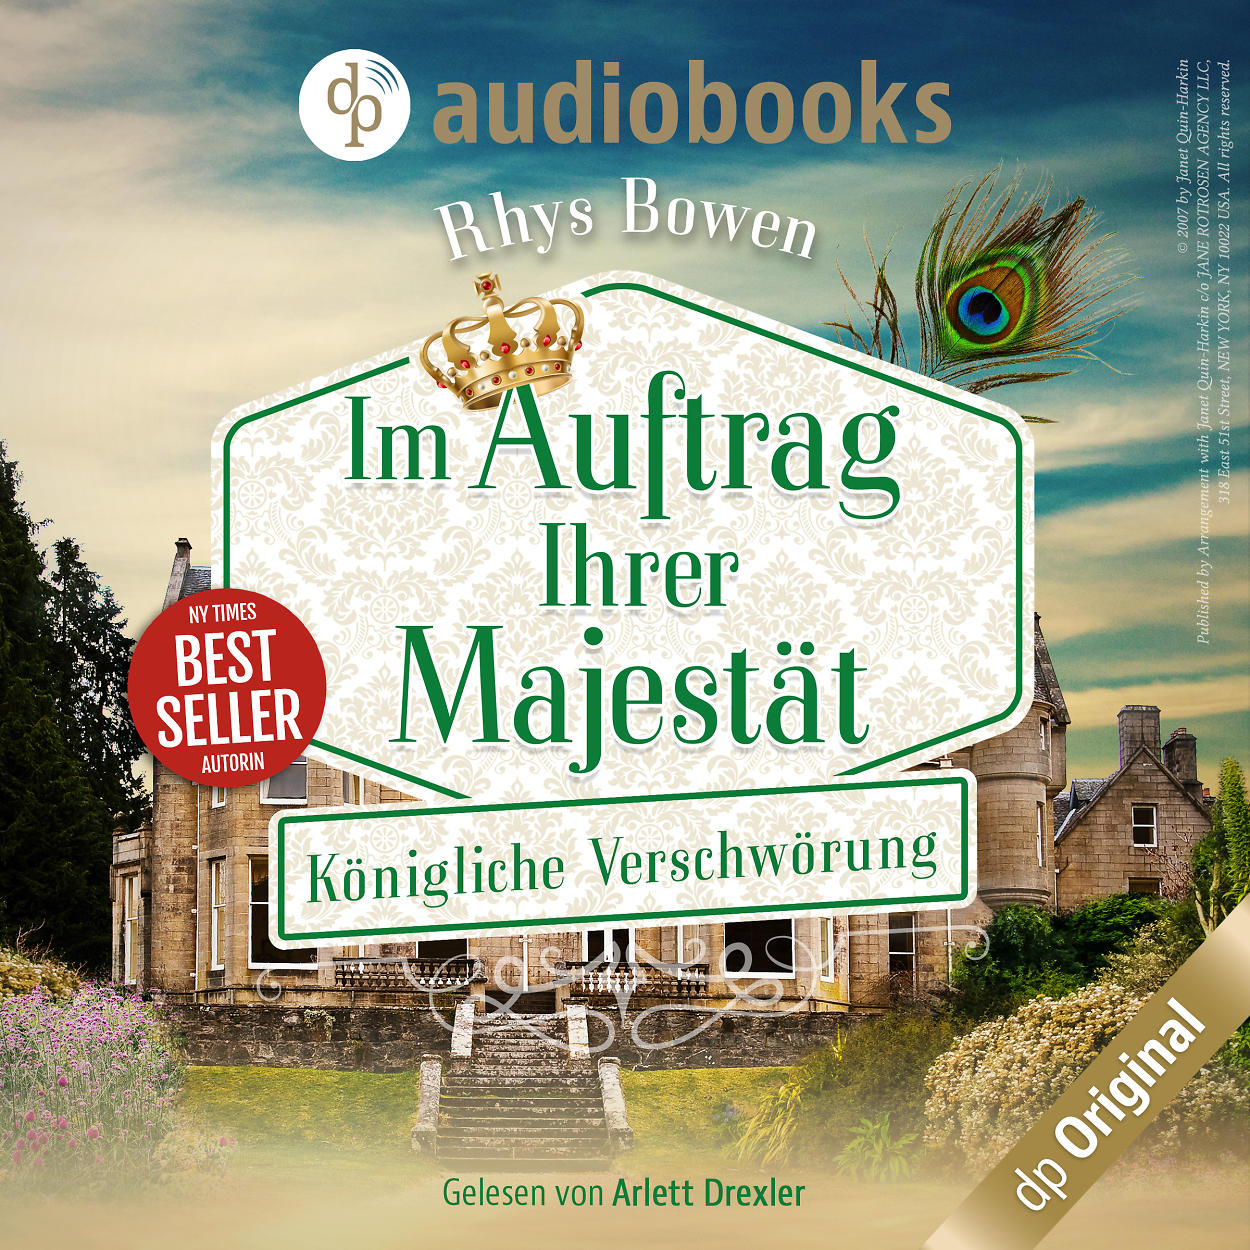 Audiobook - Königliche Verschwörung